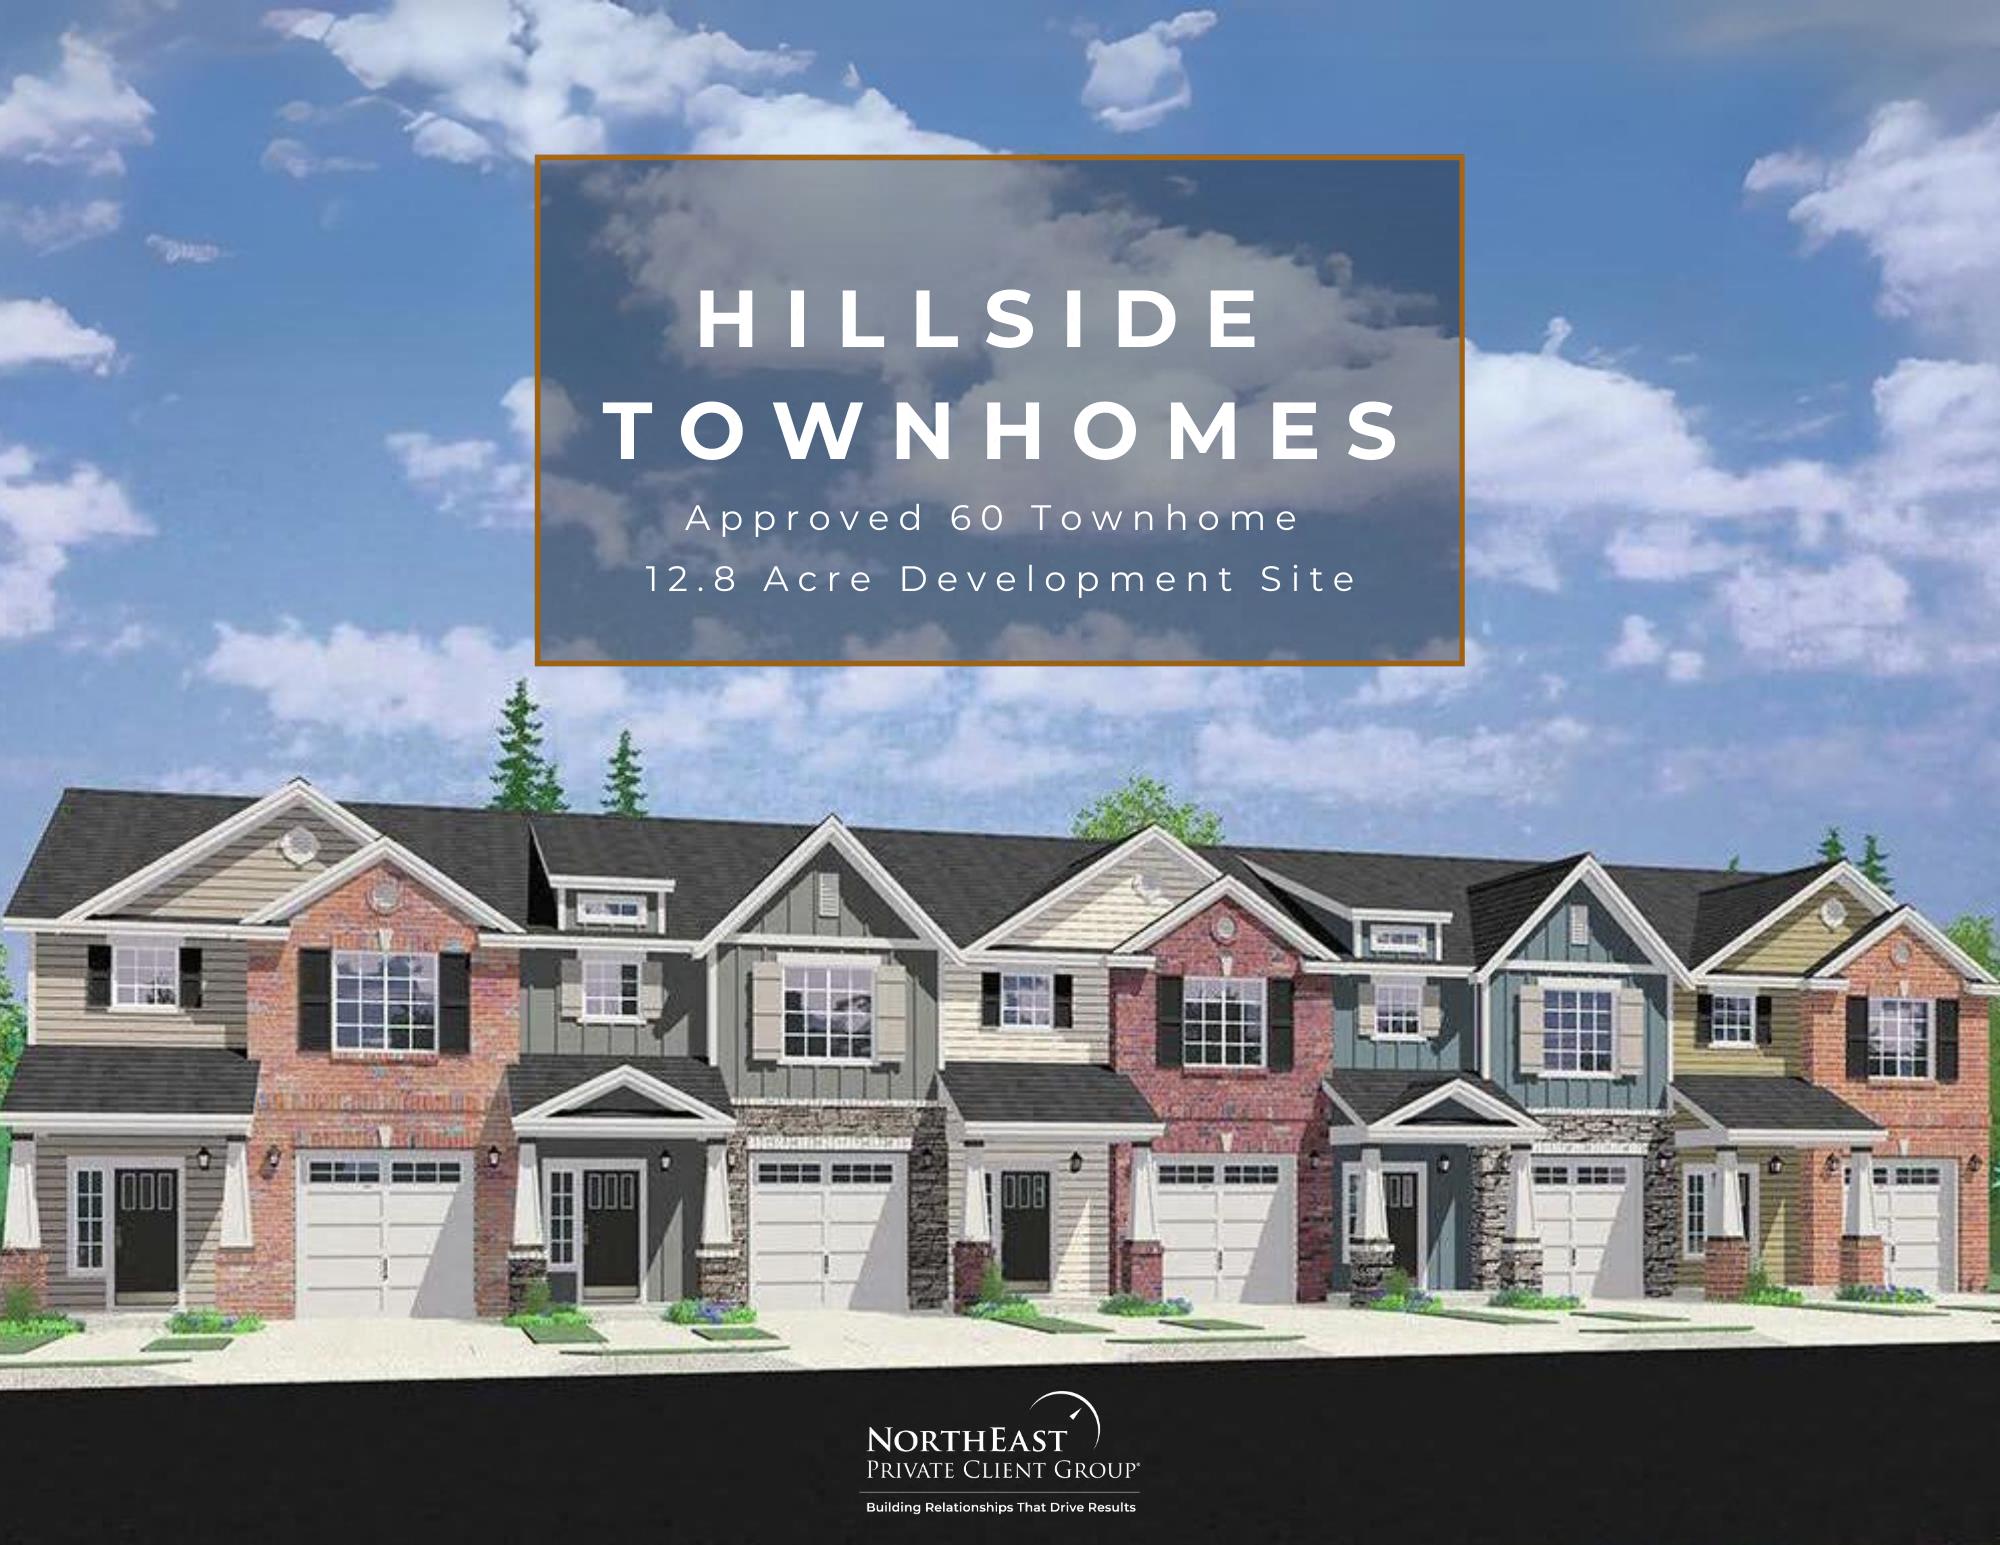 Hillside Homes Group